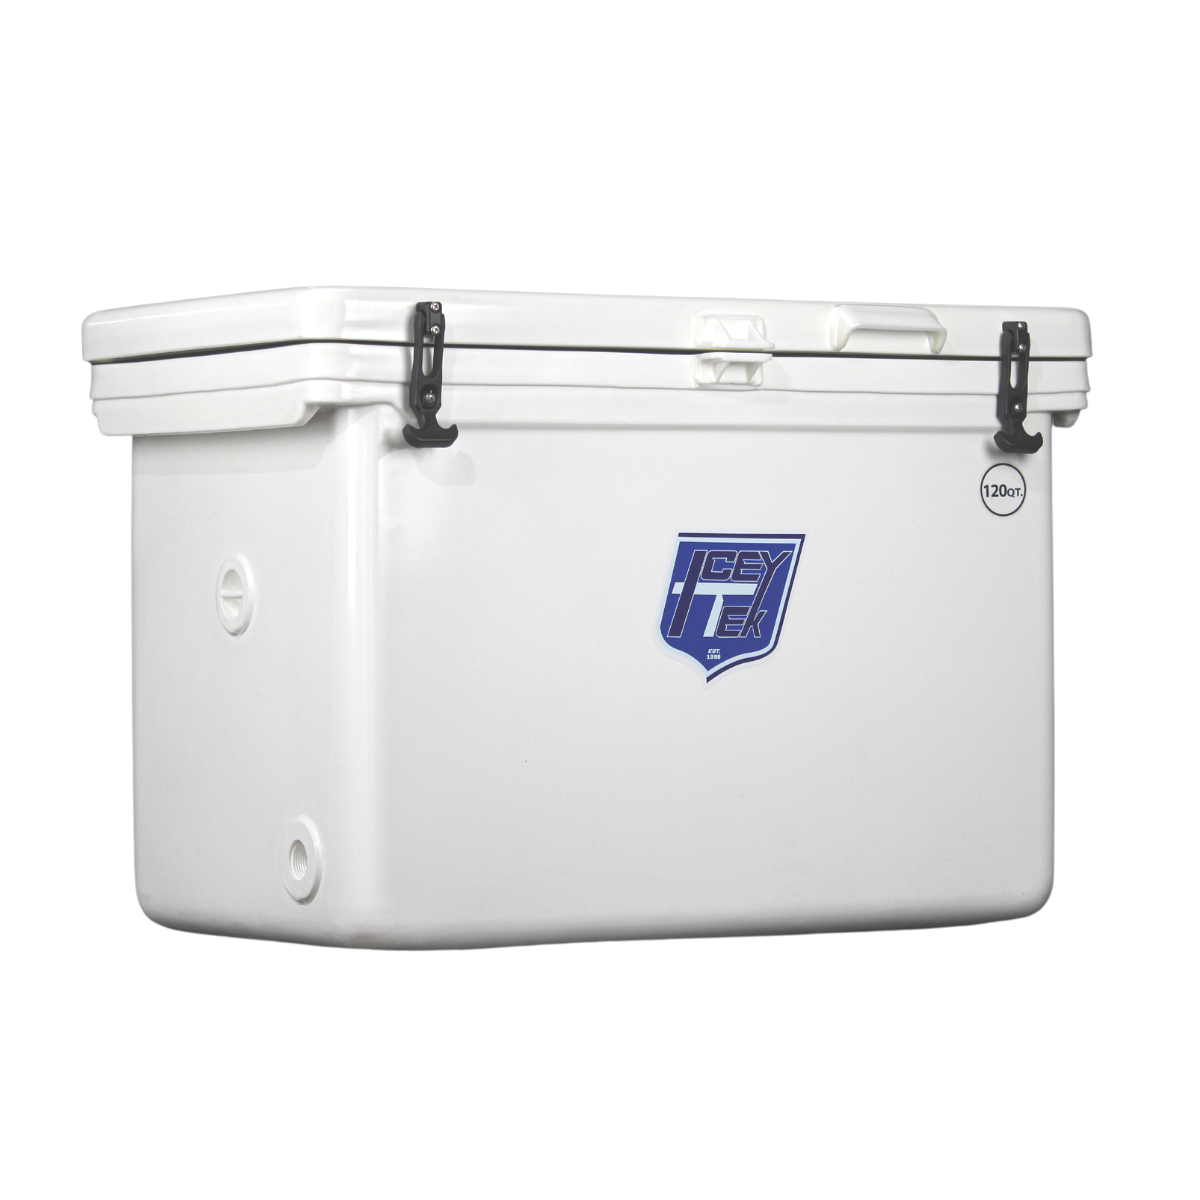 ICEY-TEK 120 Quart Cooler ( FREE SHIPPING )